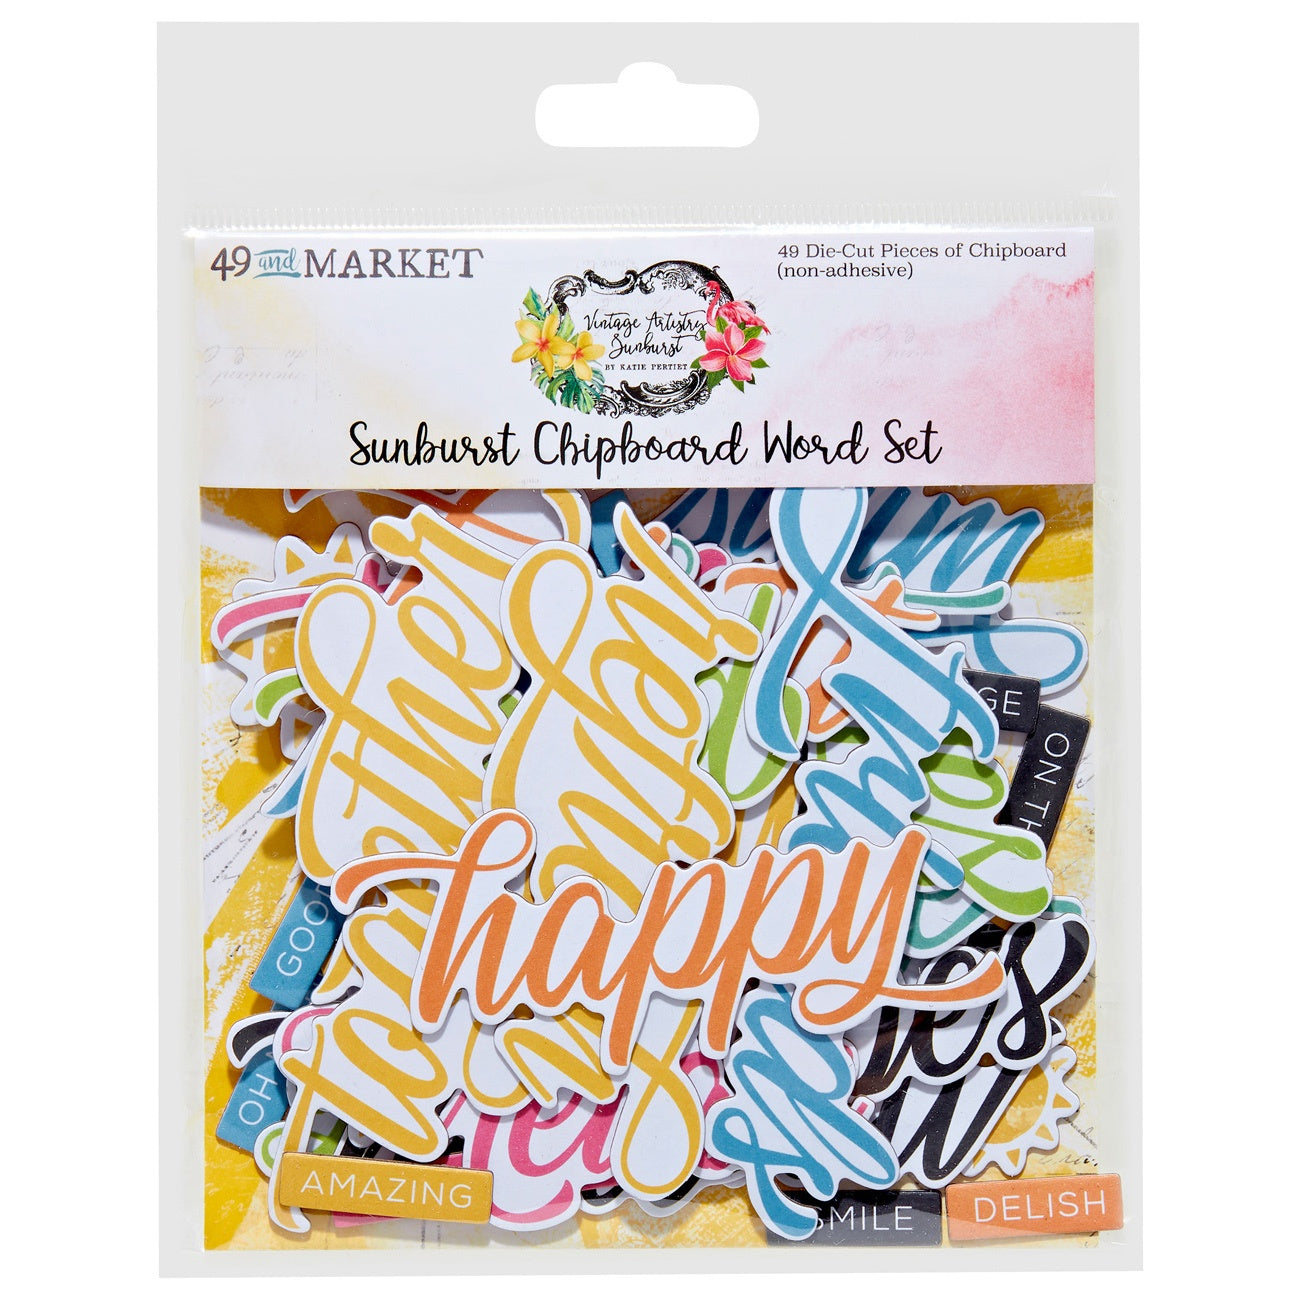 Sunburst Chipboard Word Set in Sunburst collection by 49 & Market